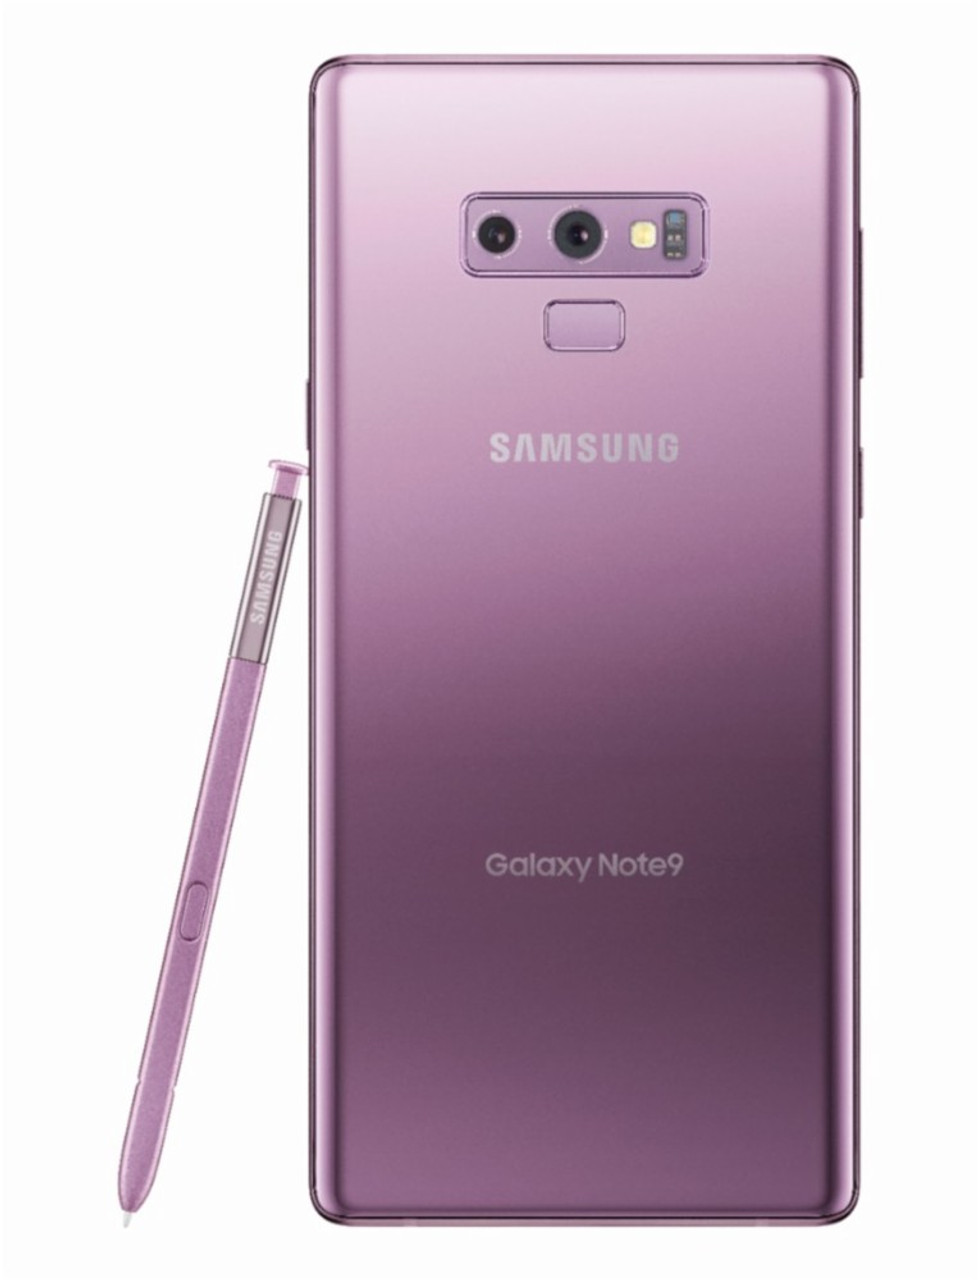 Samsung galaxy note 9 (工場出荷時のロック解除) 6.4 インチ 6GB RAM ...